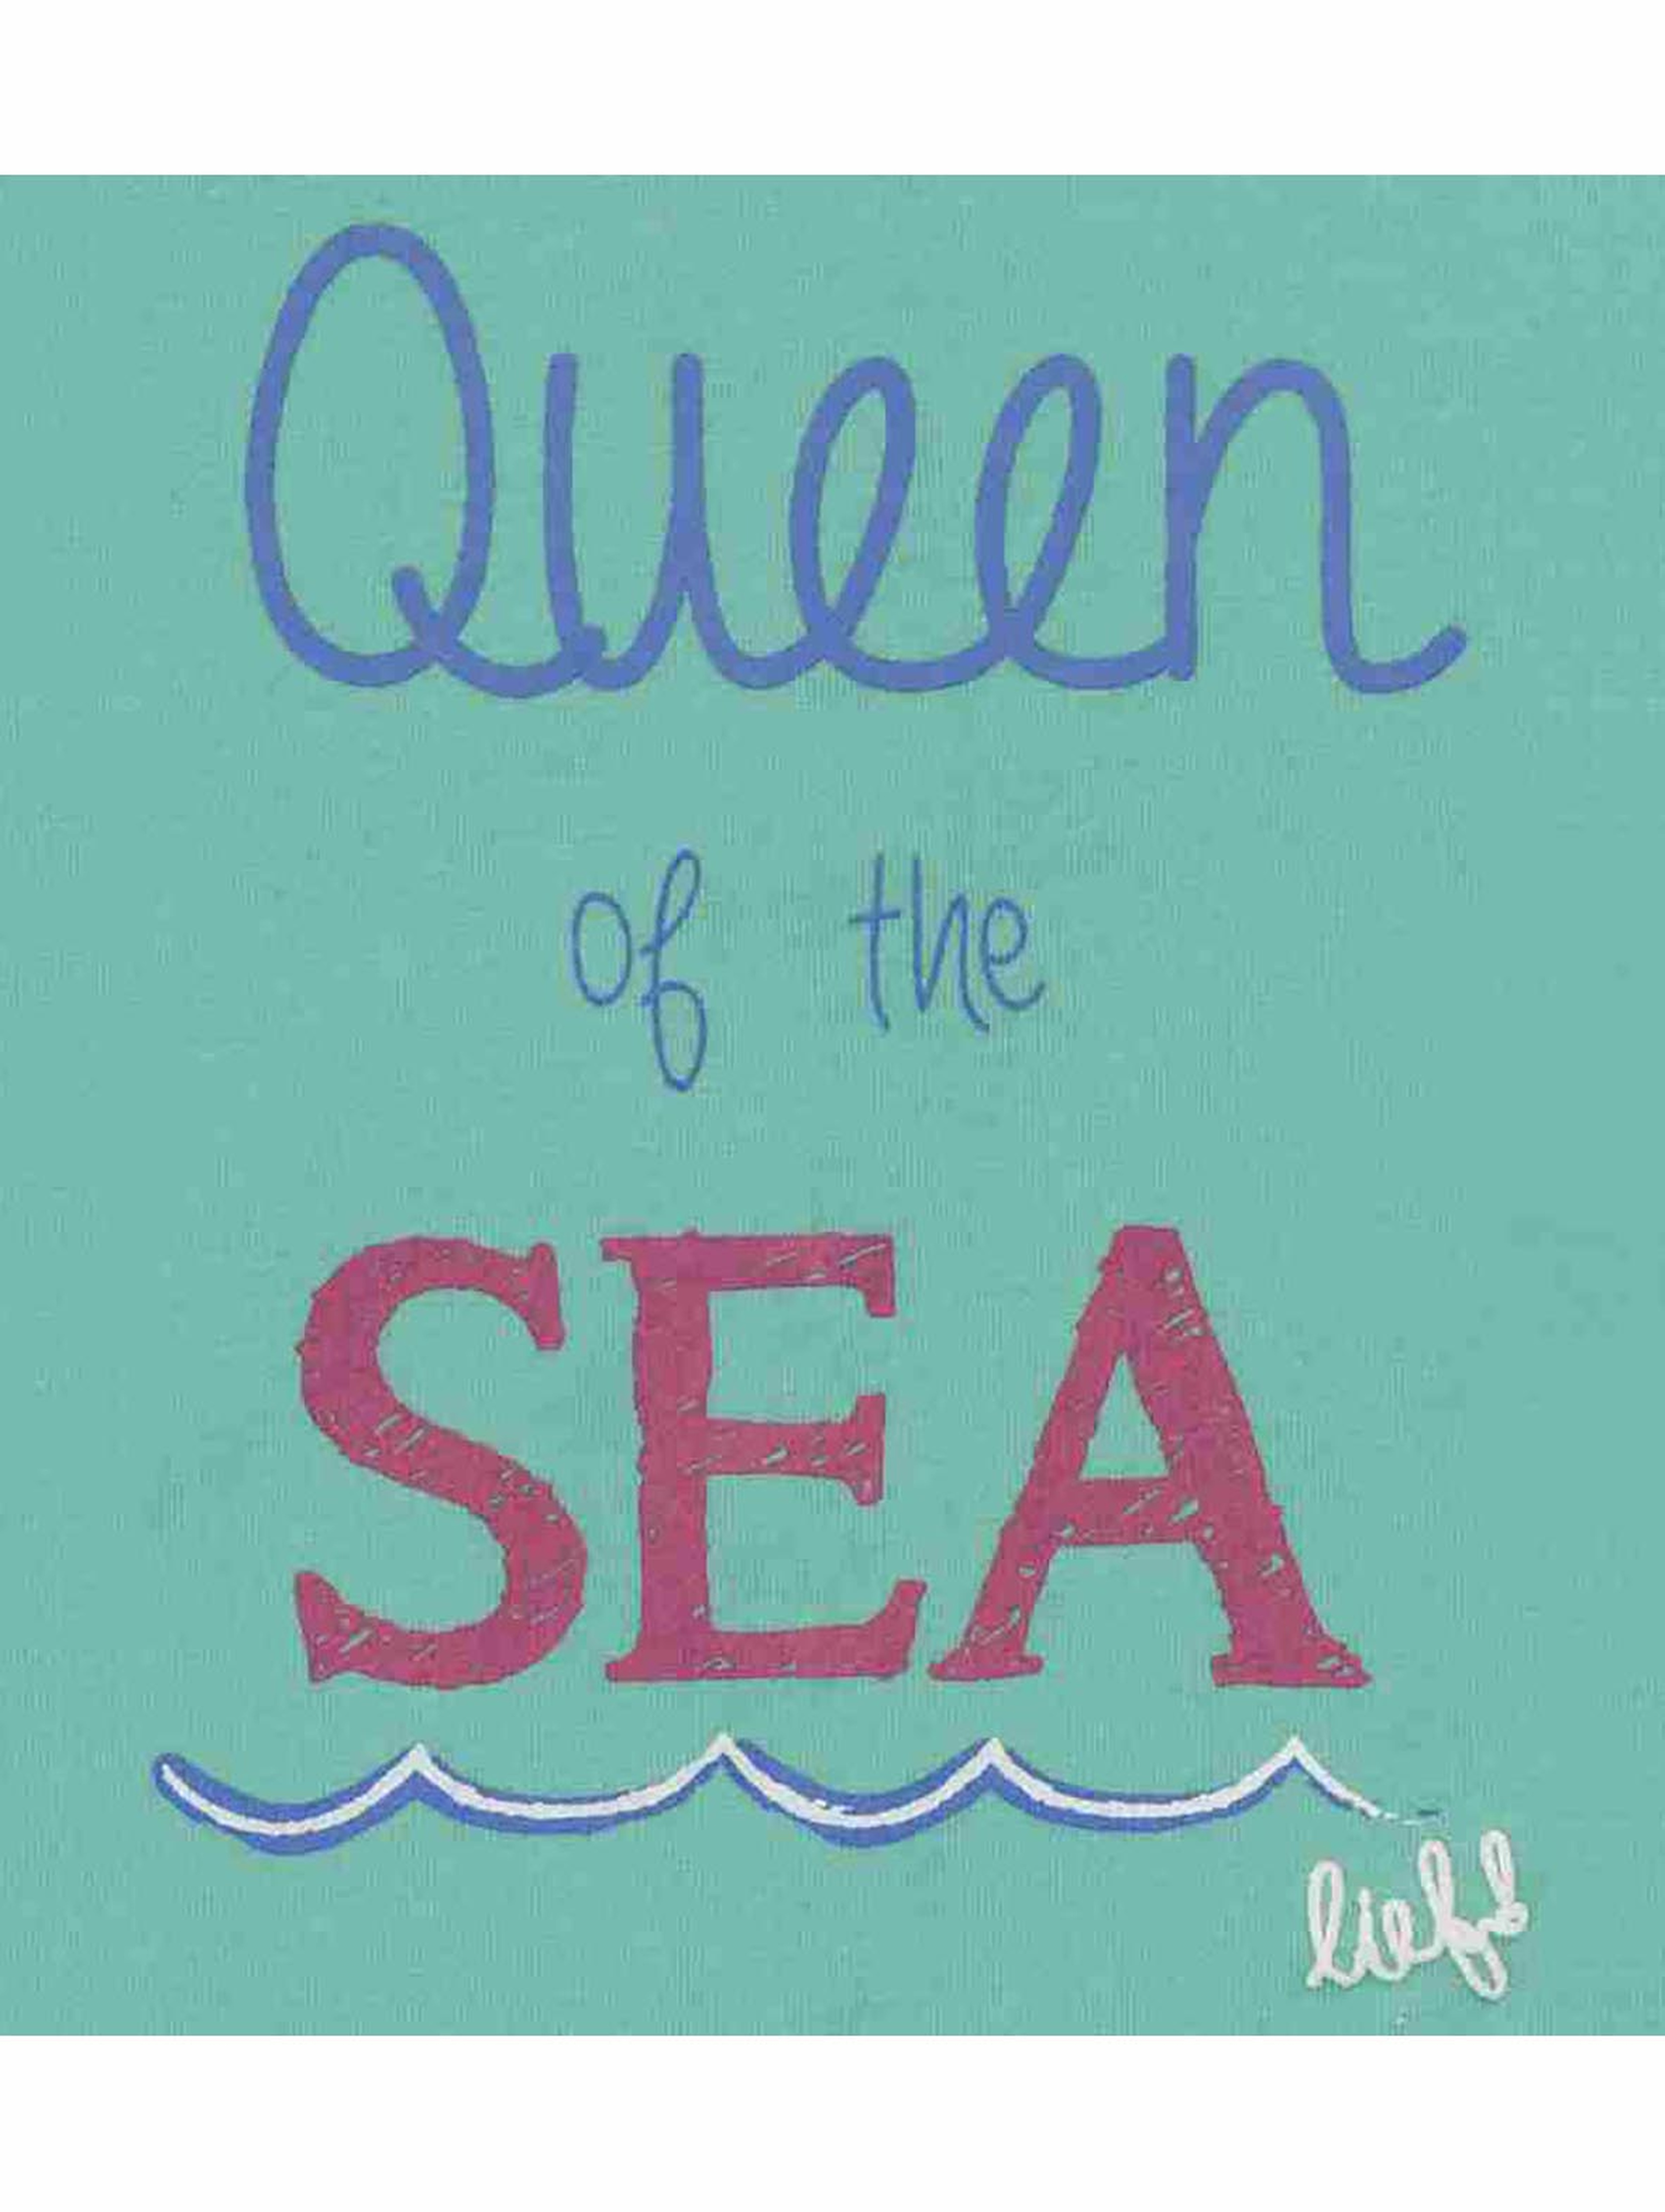 T-shirt dziewczęcy, zielony, Queen of the sea, Lief